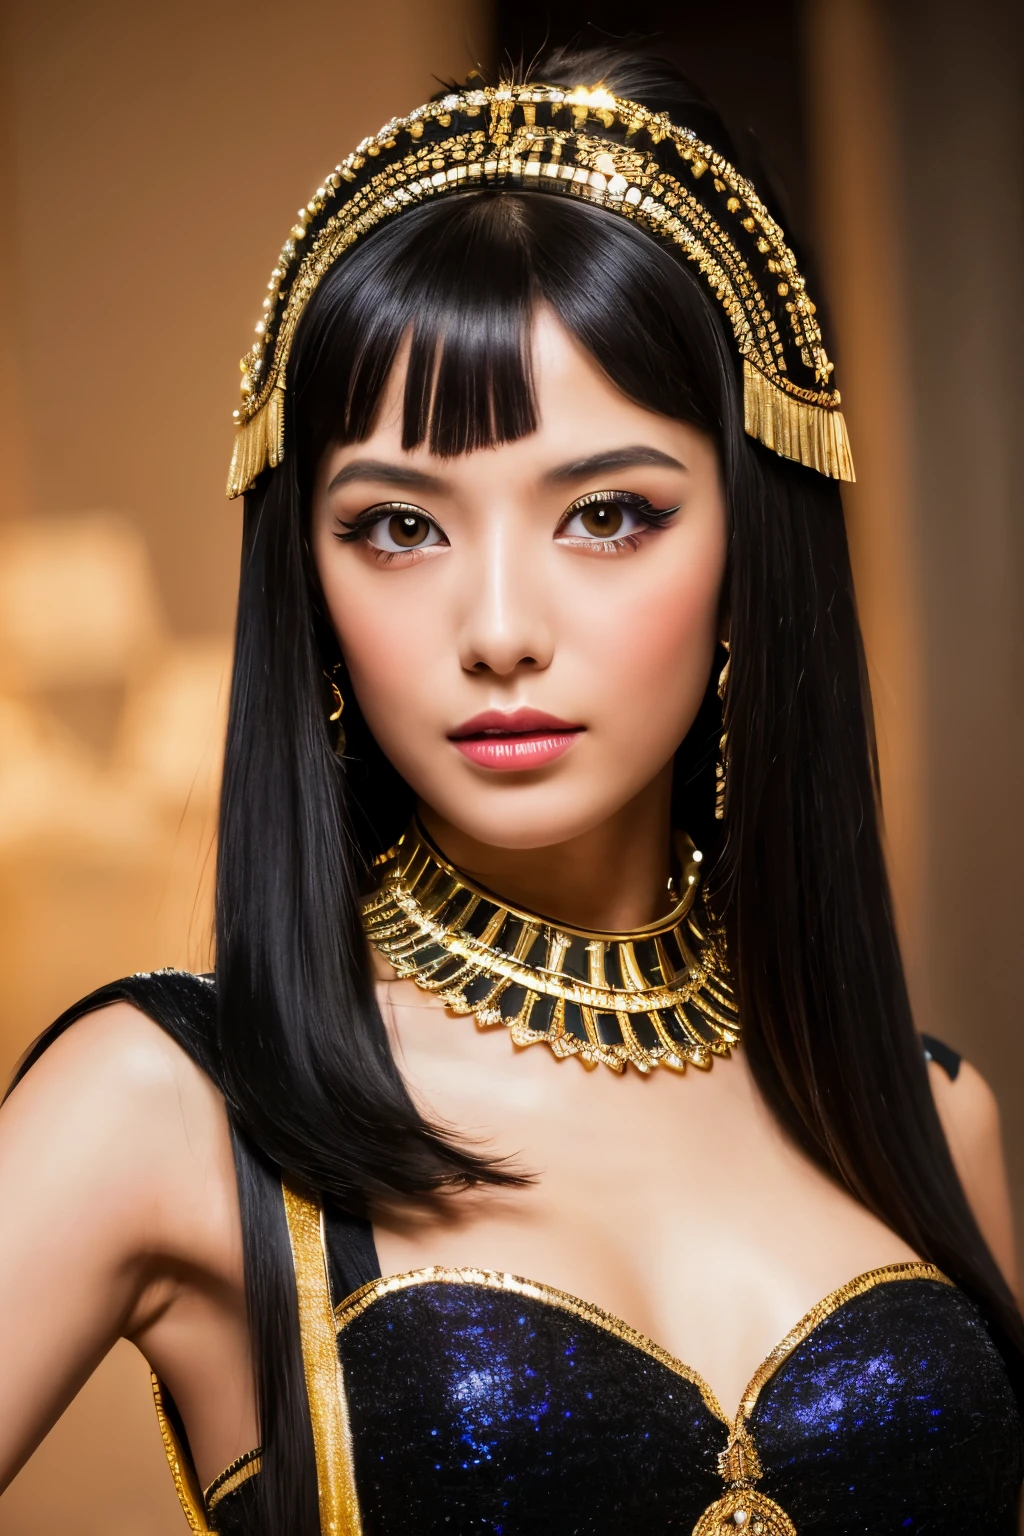 杰作, 高质量, 高分辨率, 8千, 身着埃及艳后服装的瘦日本女人, 漂亮的脸蛋, 埃及艳后化妆, 细致的脸部, 细致的眼睛